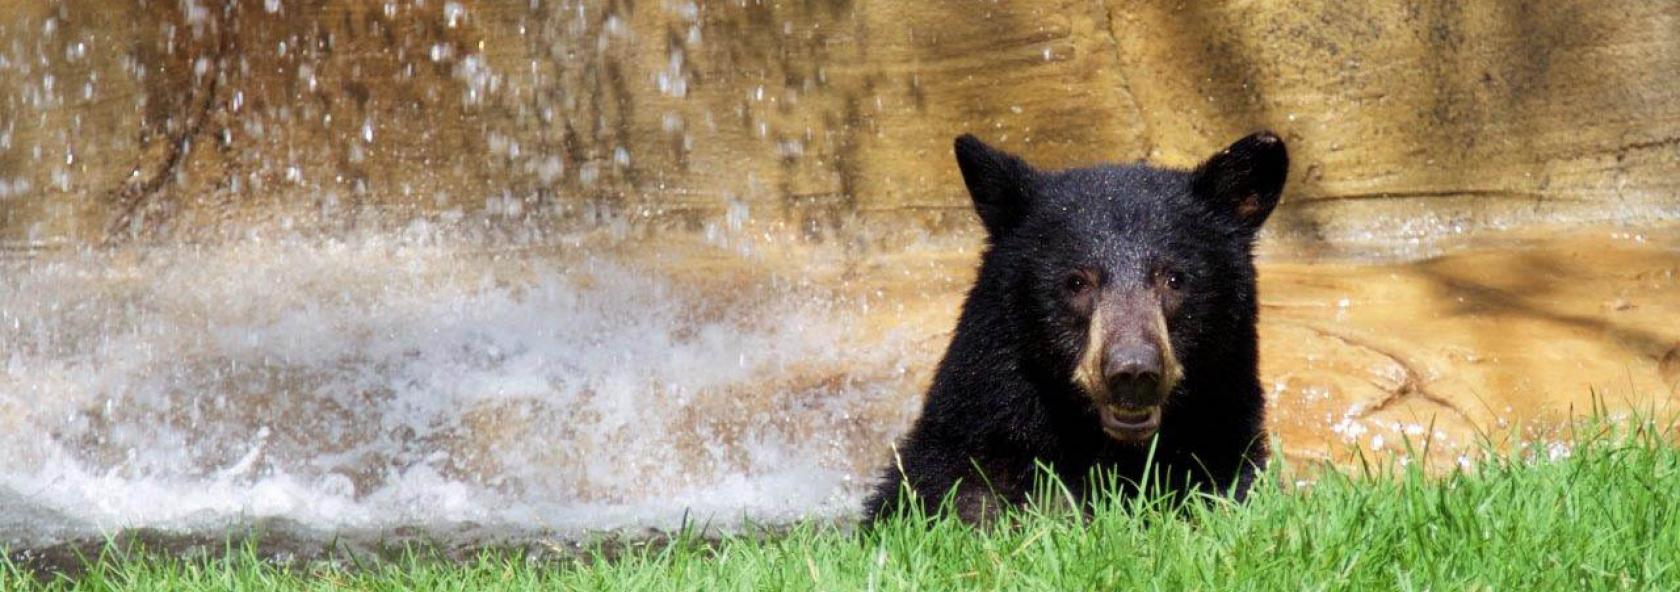 Bear's head under a waterfall in a zoo exhibit